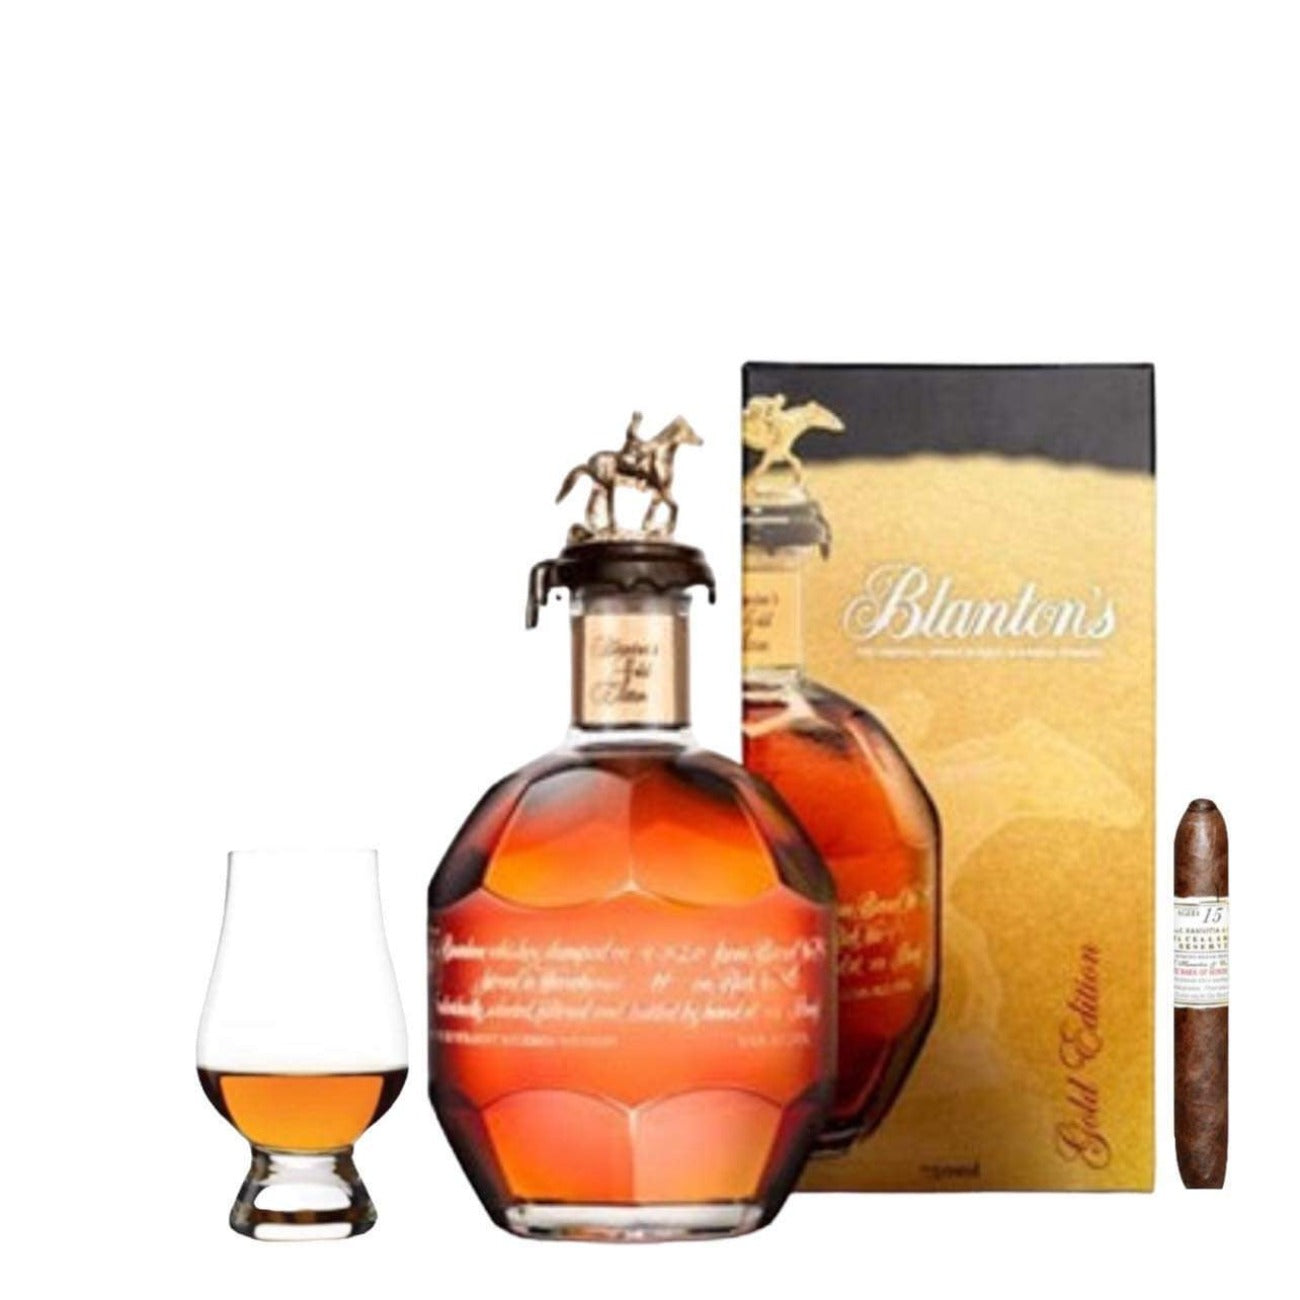 The Official Glencairn Blanton's Bourbon Glass